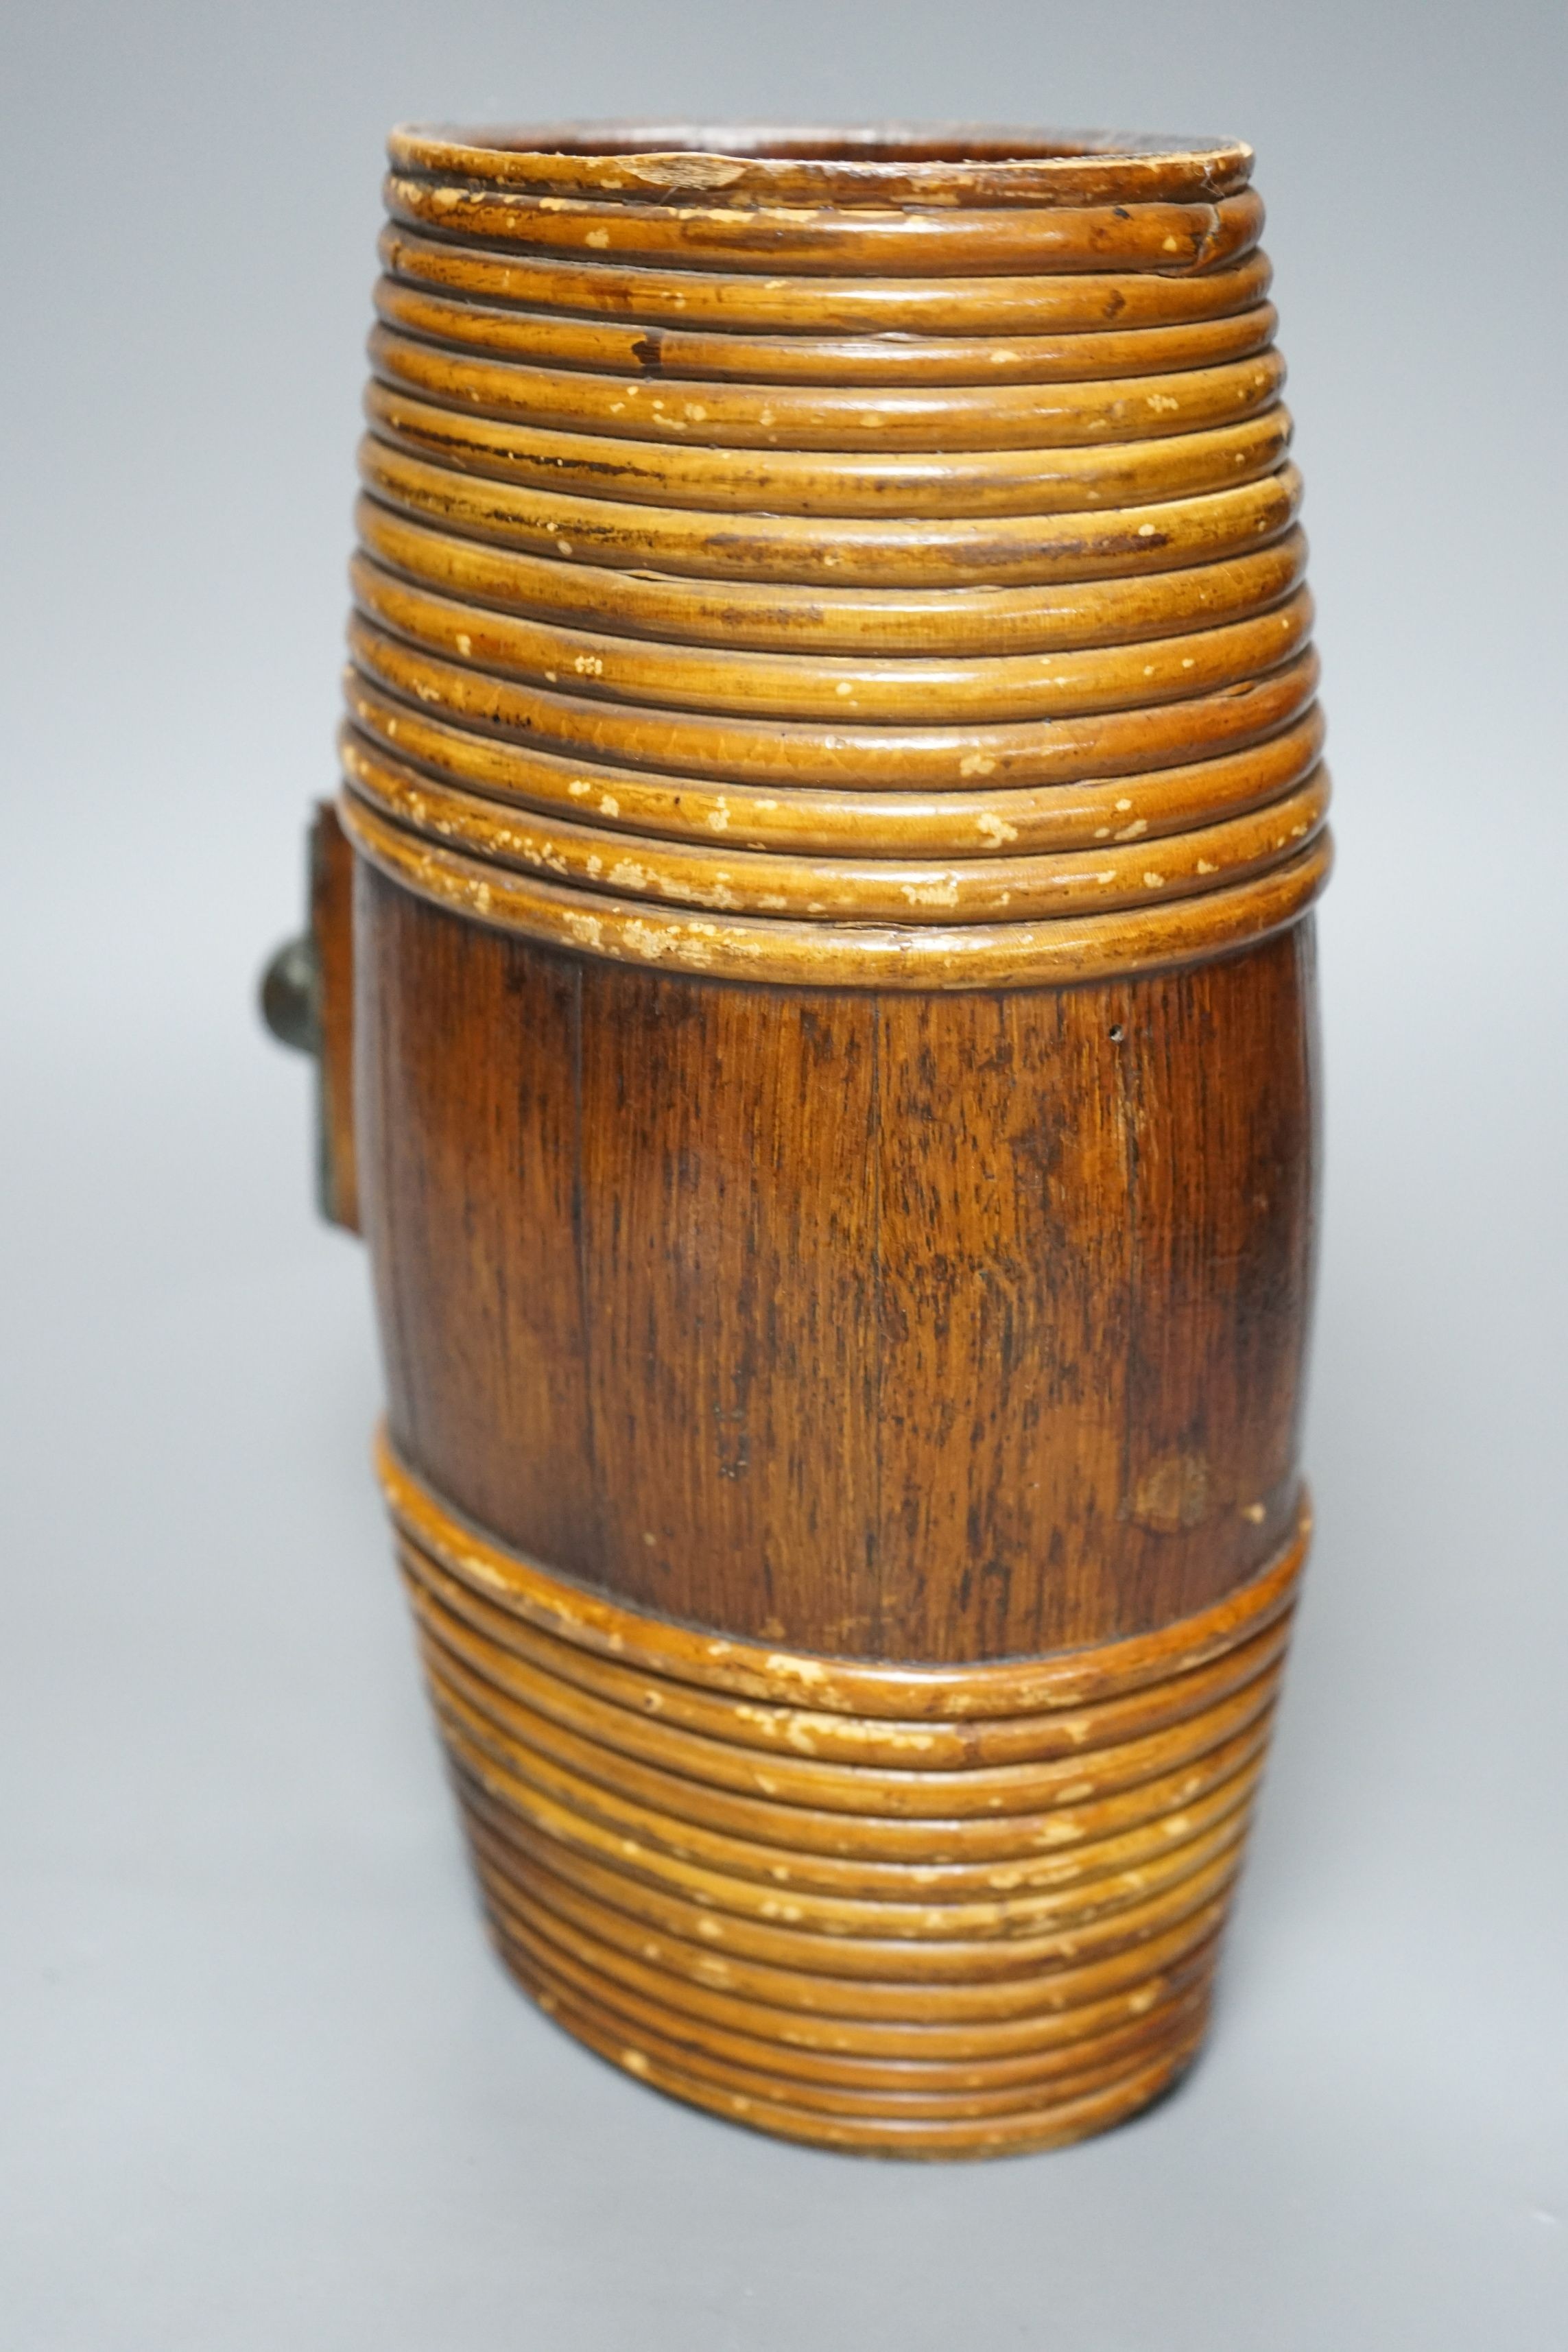 A wooden cider Kestrel, 27cms high - Image 3 of 3